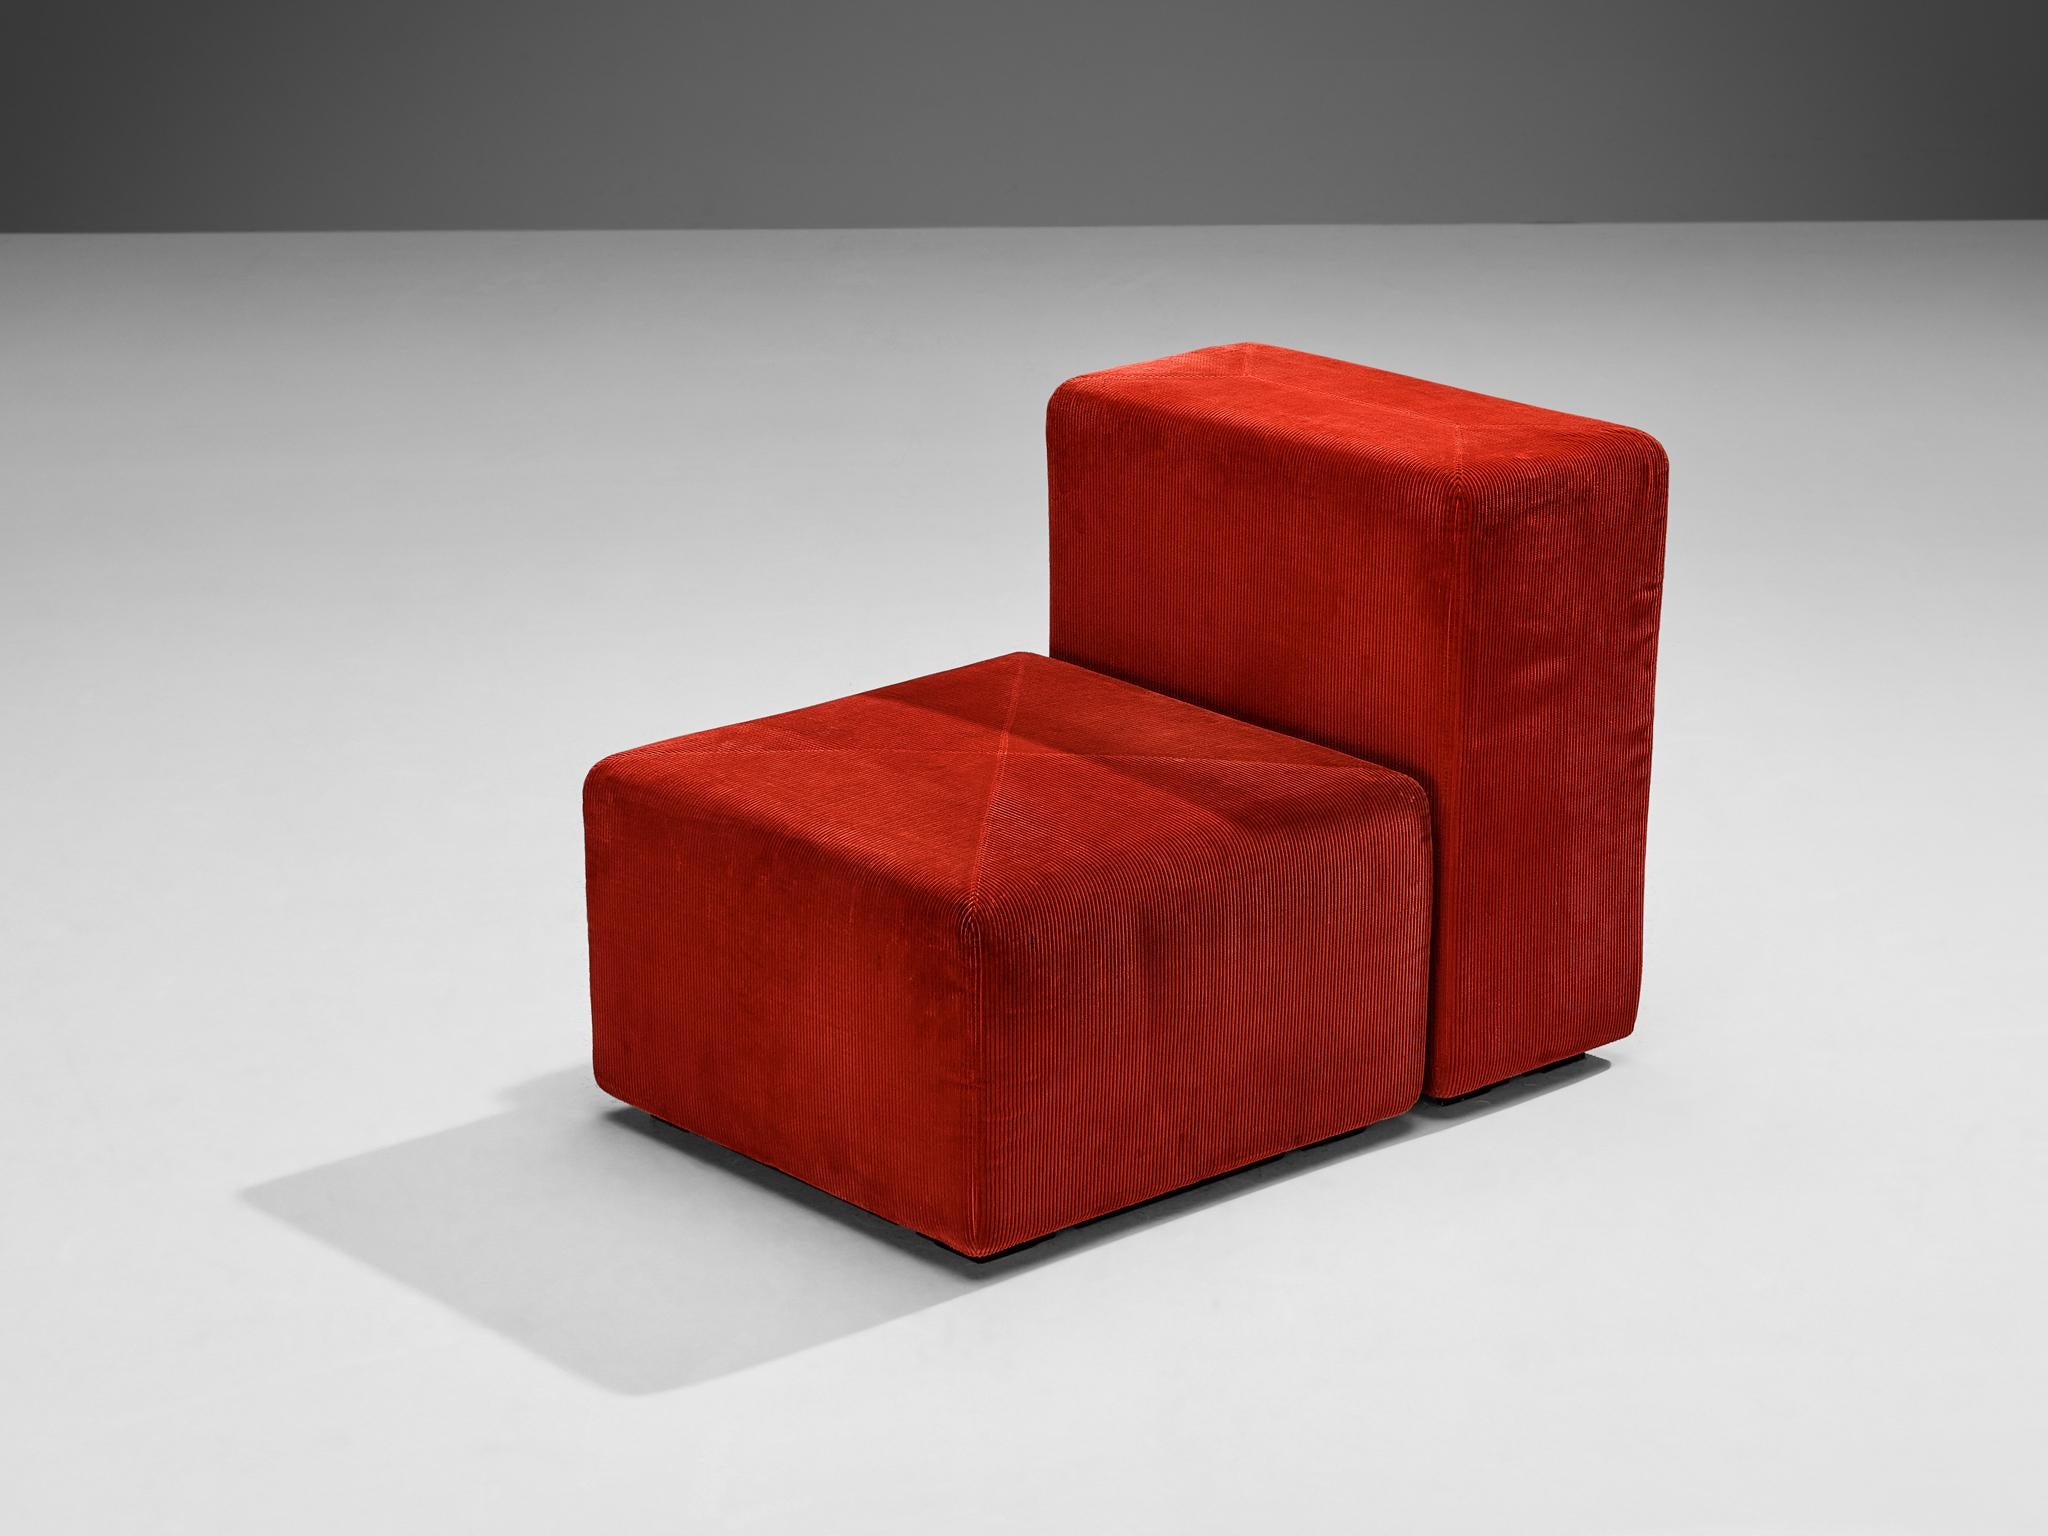 Giancarlo Piretti pour Anonima Castelli, 'Sistema 61', chaise longue, velours côtelé, plastique, Italie, 1973

Dans le domaine du design des années 1970, le Sistema 61 apparaît comme un témoignage frappant du monde du design italien, où il était